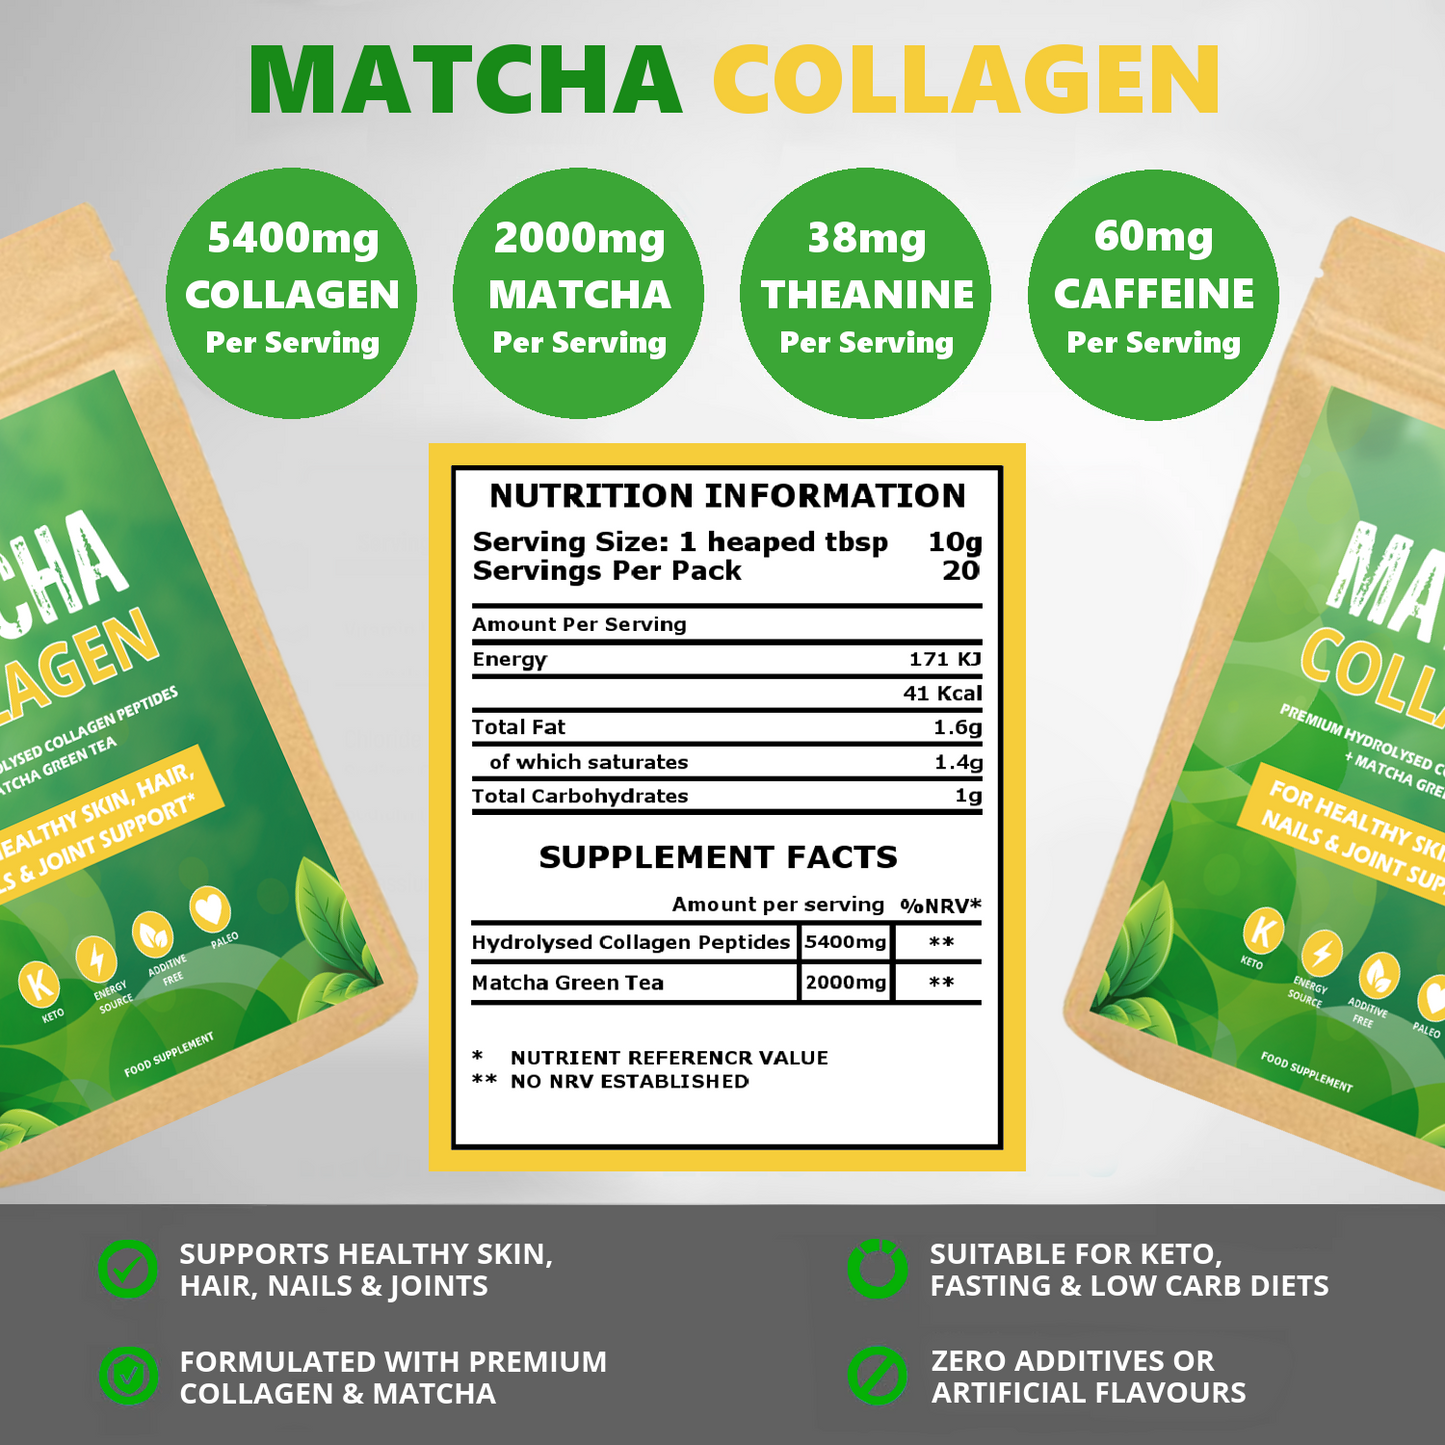 Matcha Collagen Powder